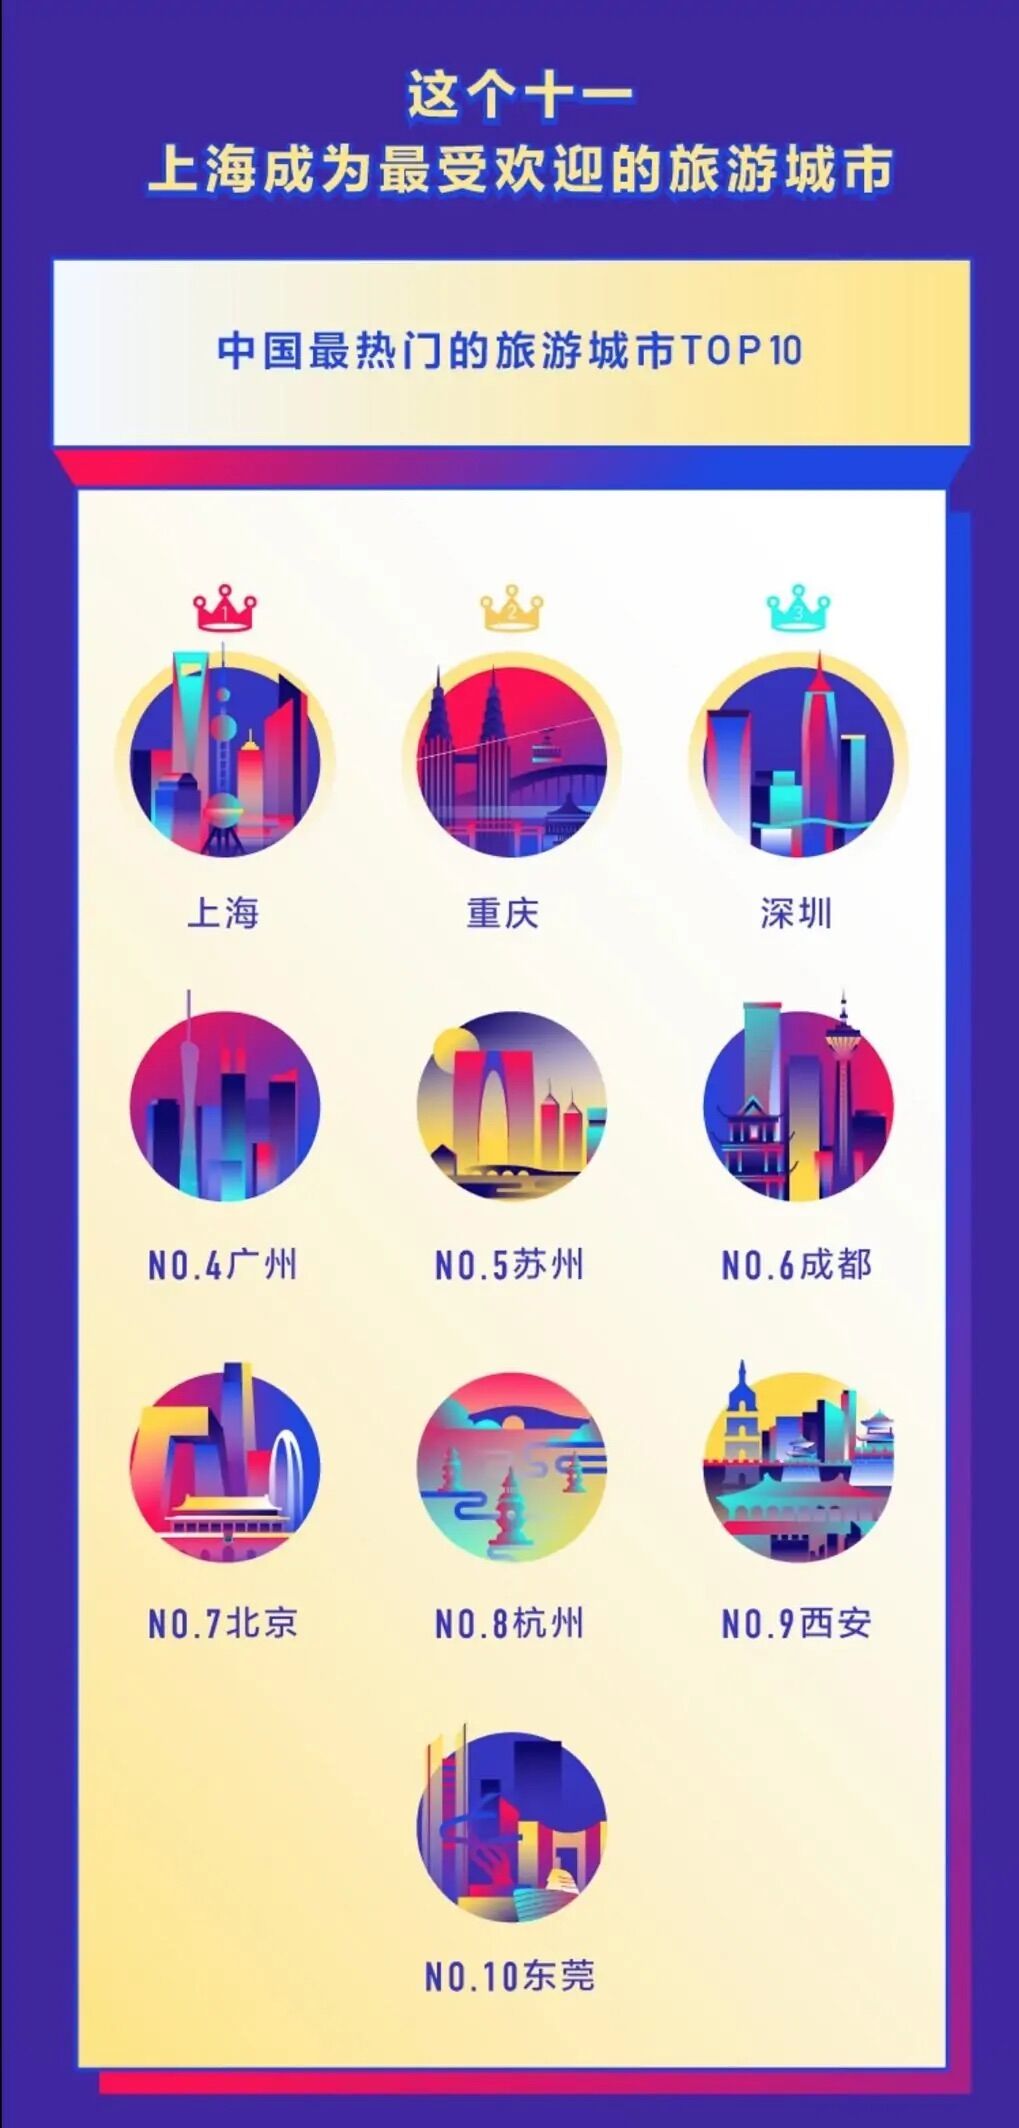 抖音发布国庆数据报告 大唐不夜城入选全国最热旅游景点